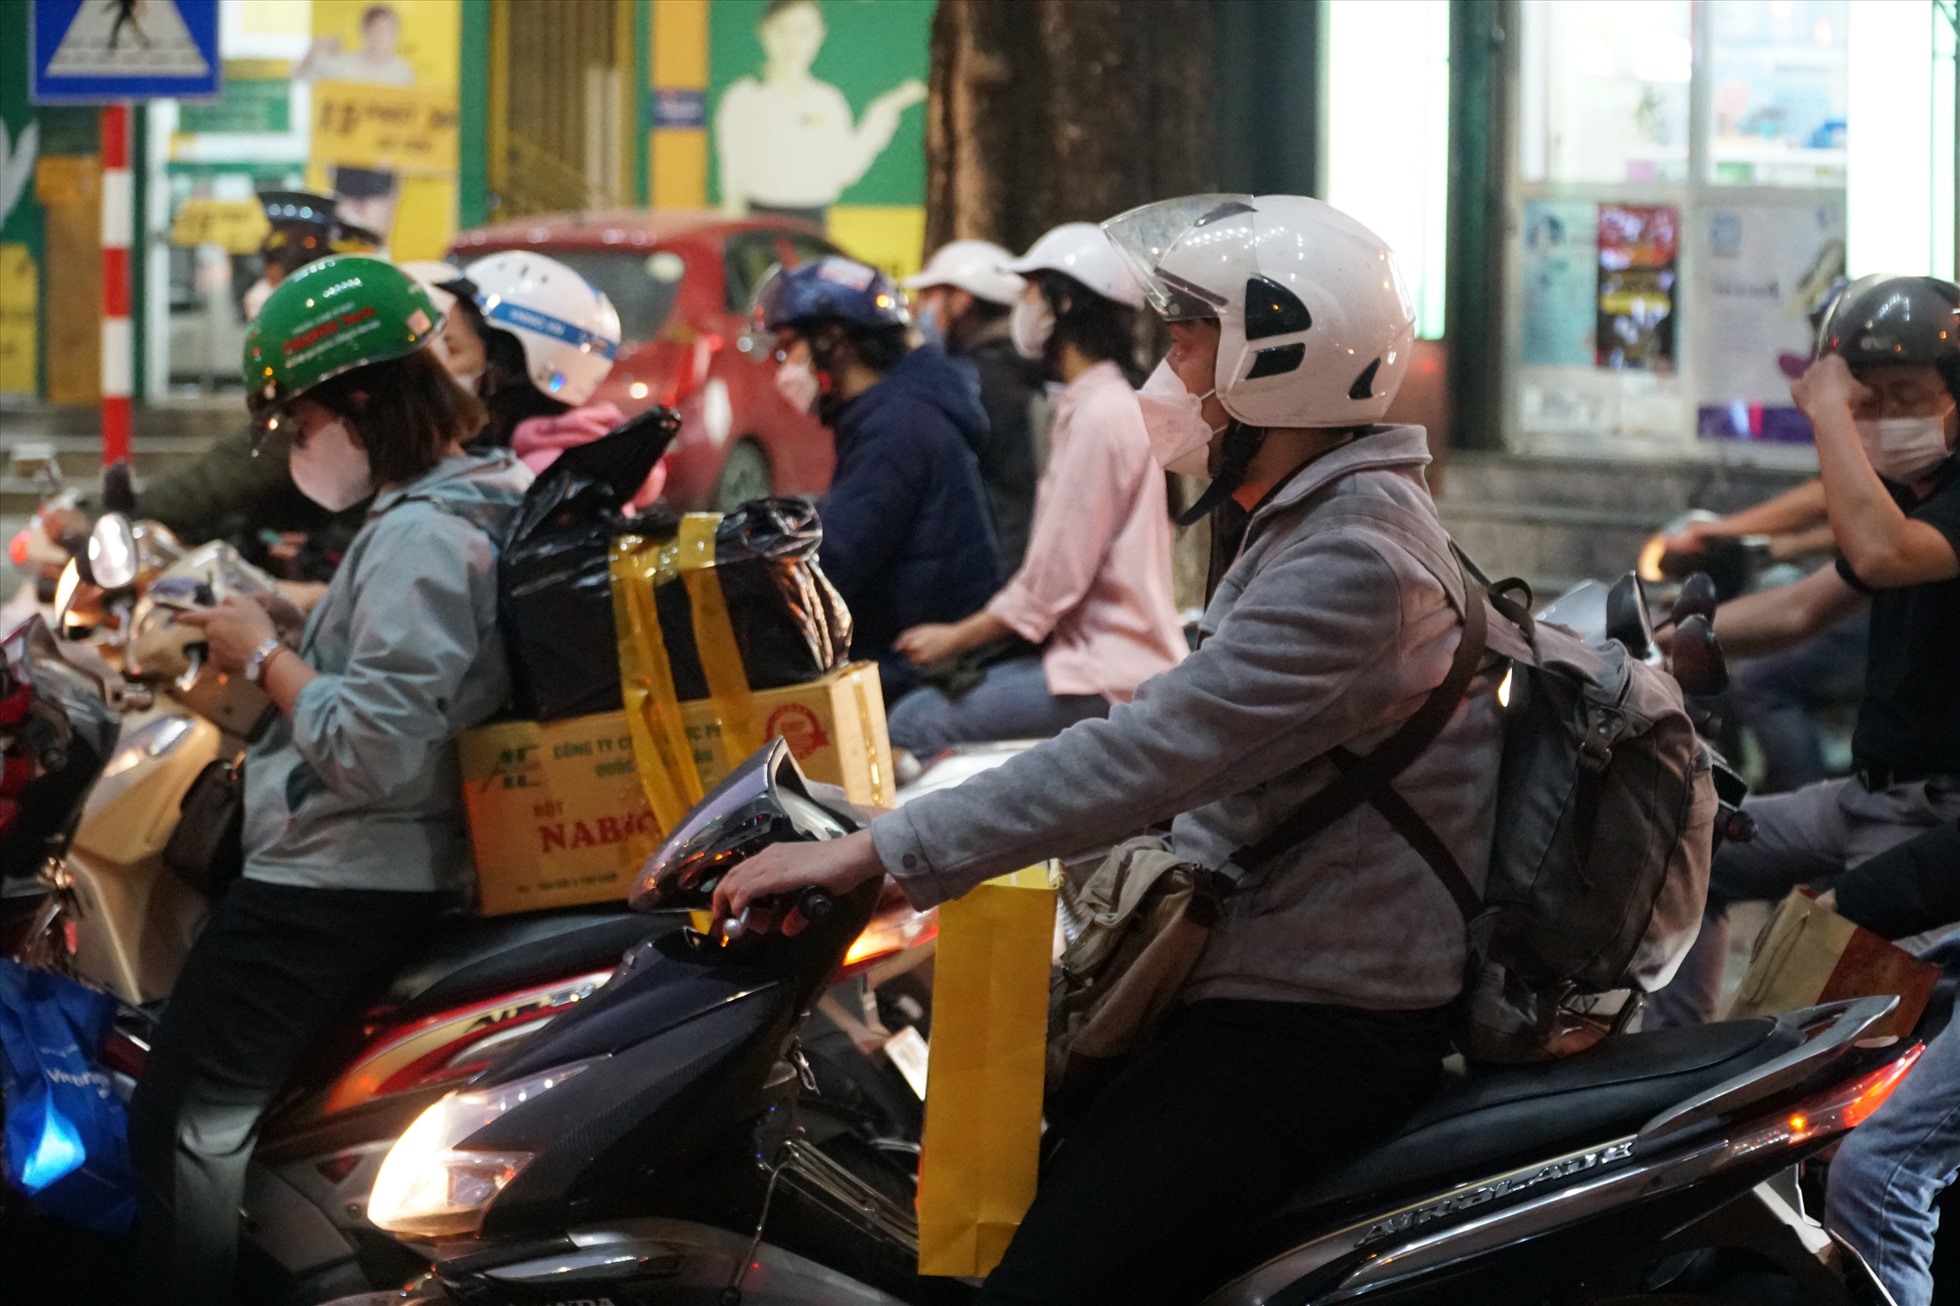 Lúc 18h30, tại đường Nguyễn Ngọc Vũ, dòng người nối đuôi nhau về quê trong tình trạng giao thông ùn tắc.